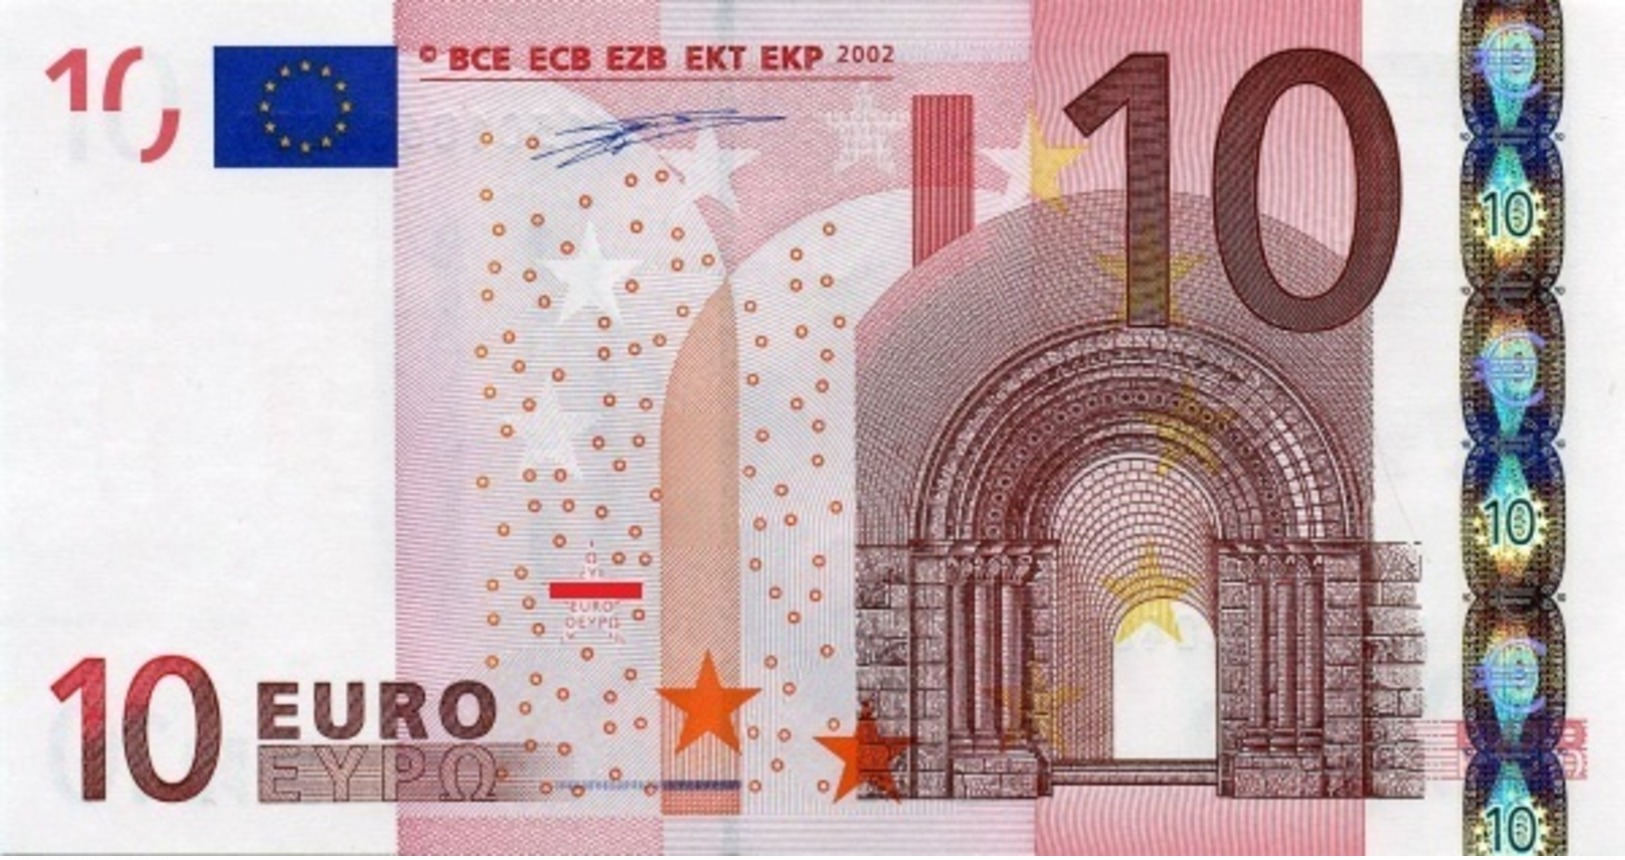 EURO SPAIN 10 V DUISENBERG G005 UNC - 10 Euro